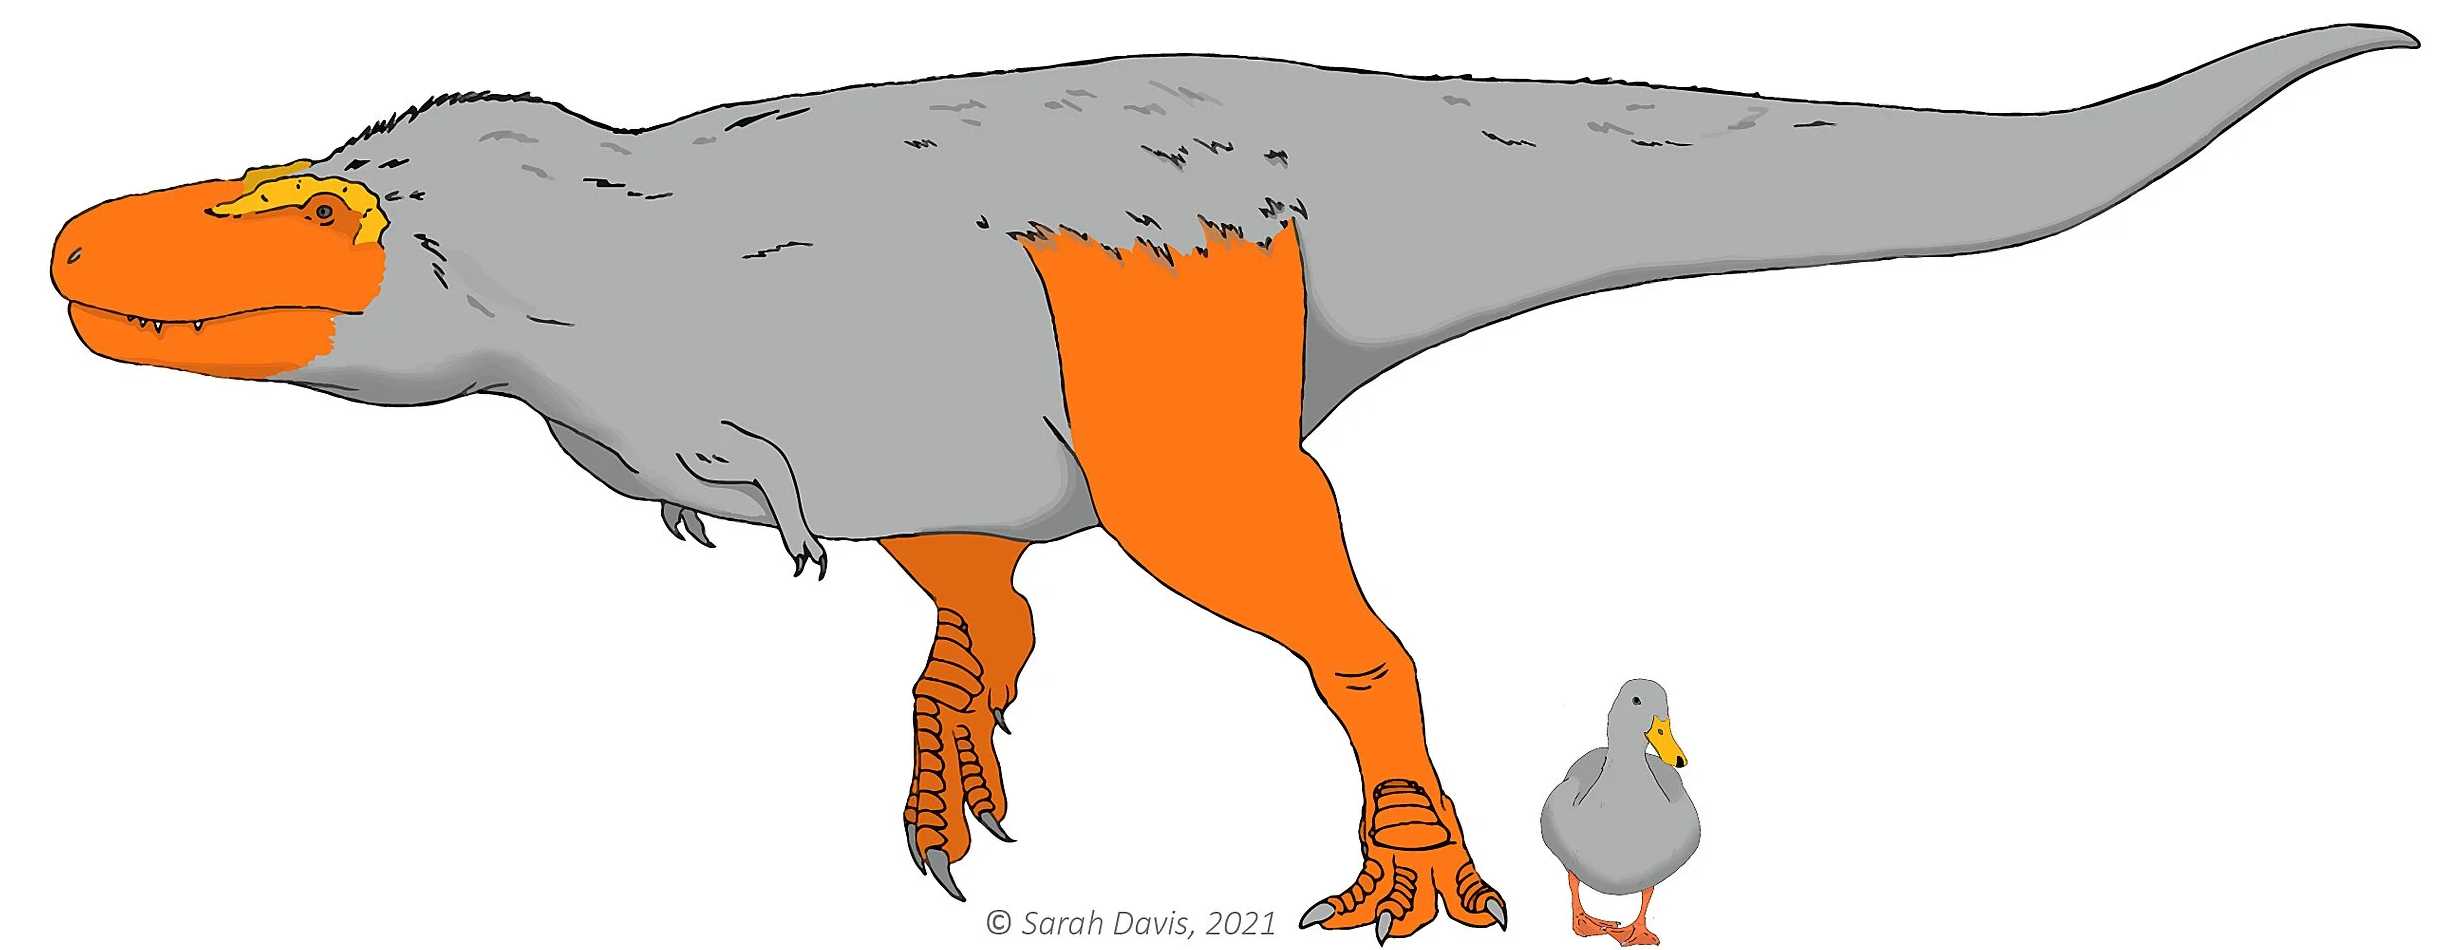 Предок динозавров и птиц мог иметь яркую расцветку кожи